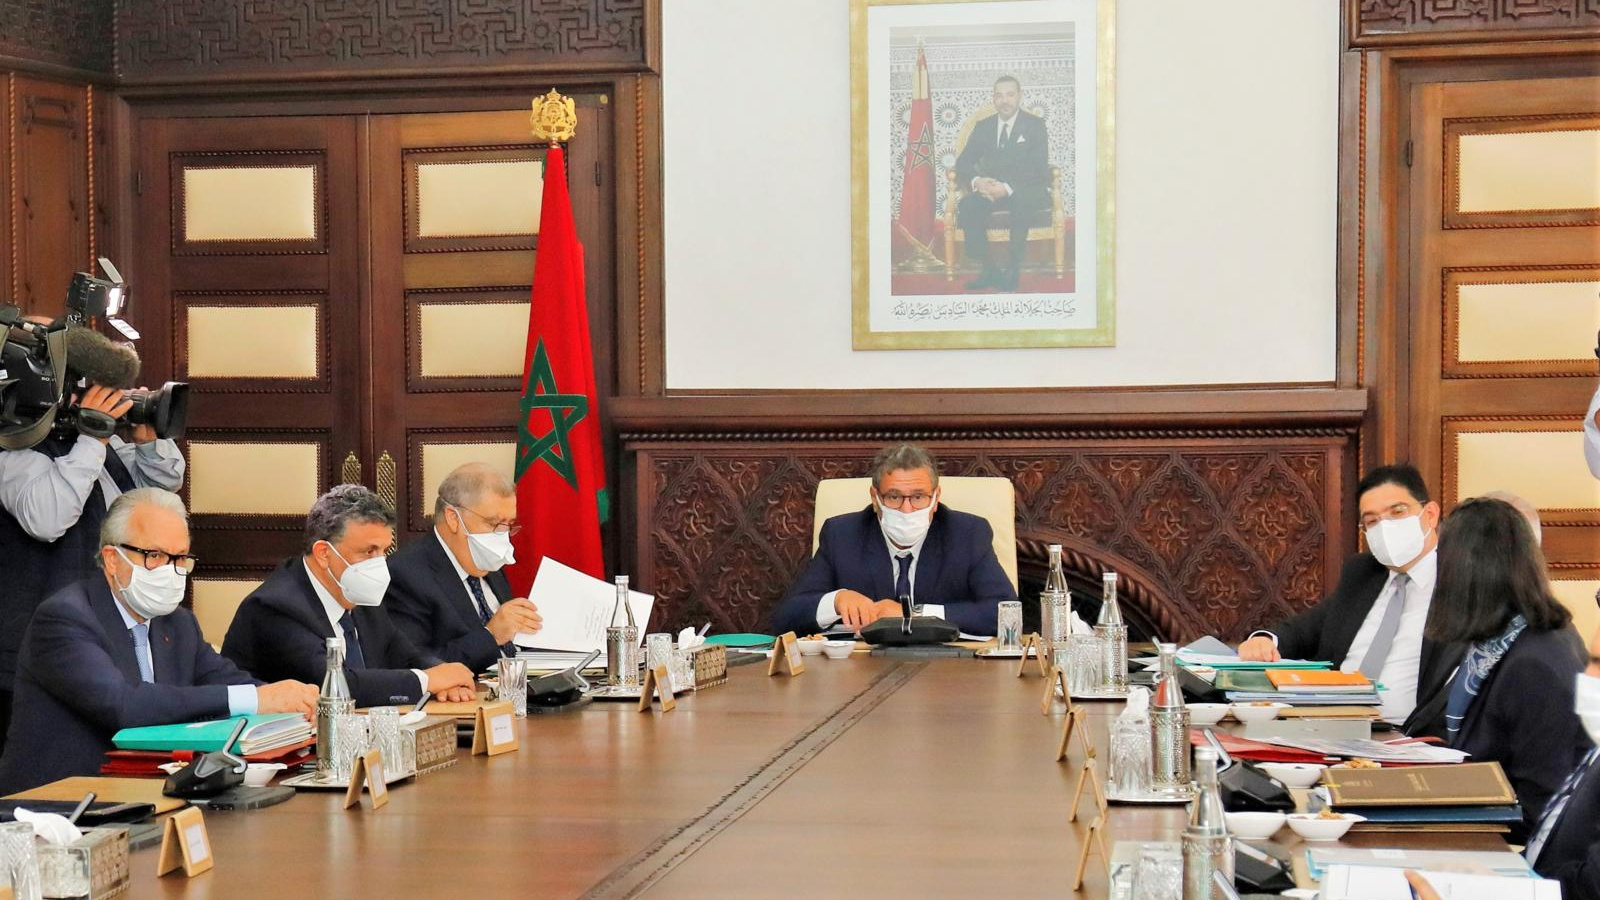 La situation épidémiologique au Maroc au menu du prochain Conseil de gouvernement